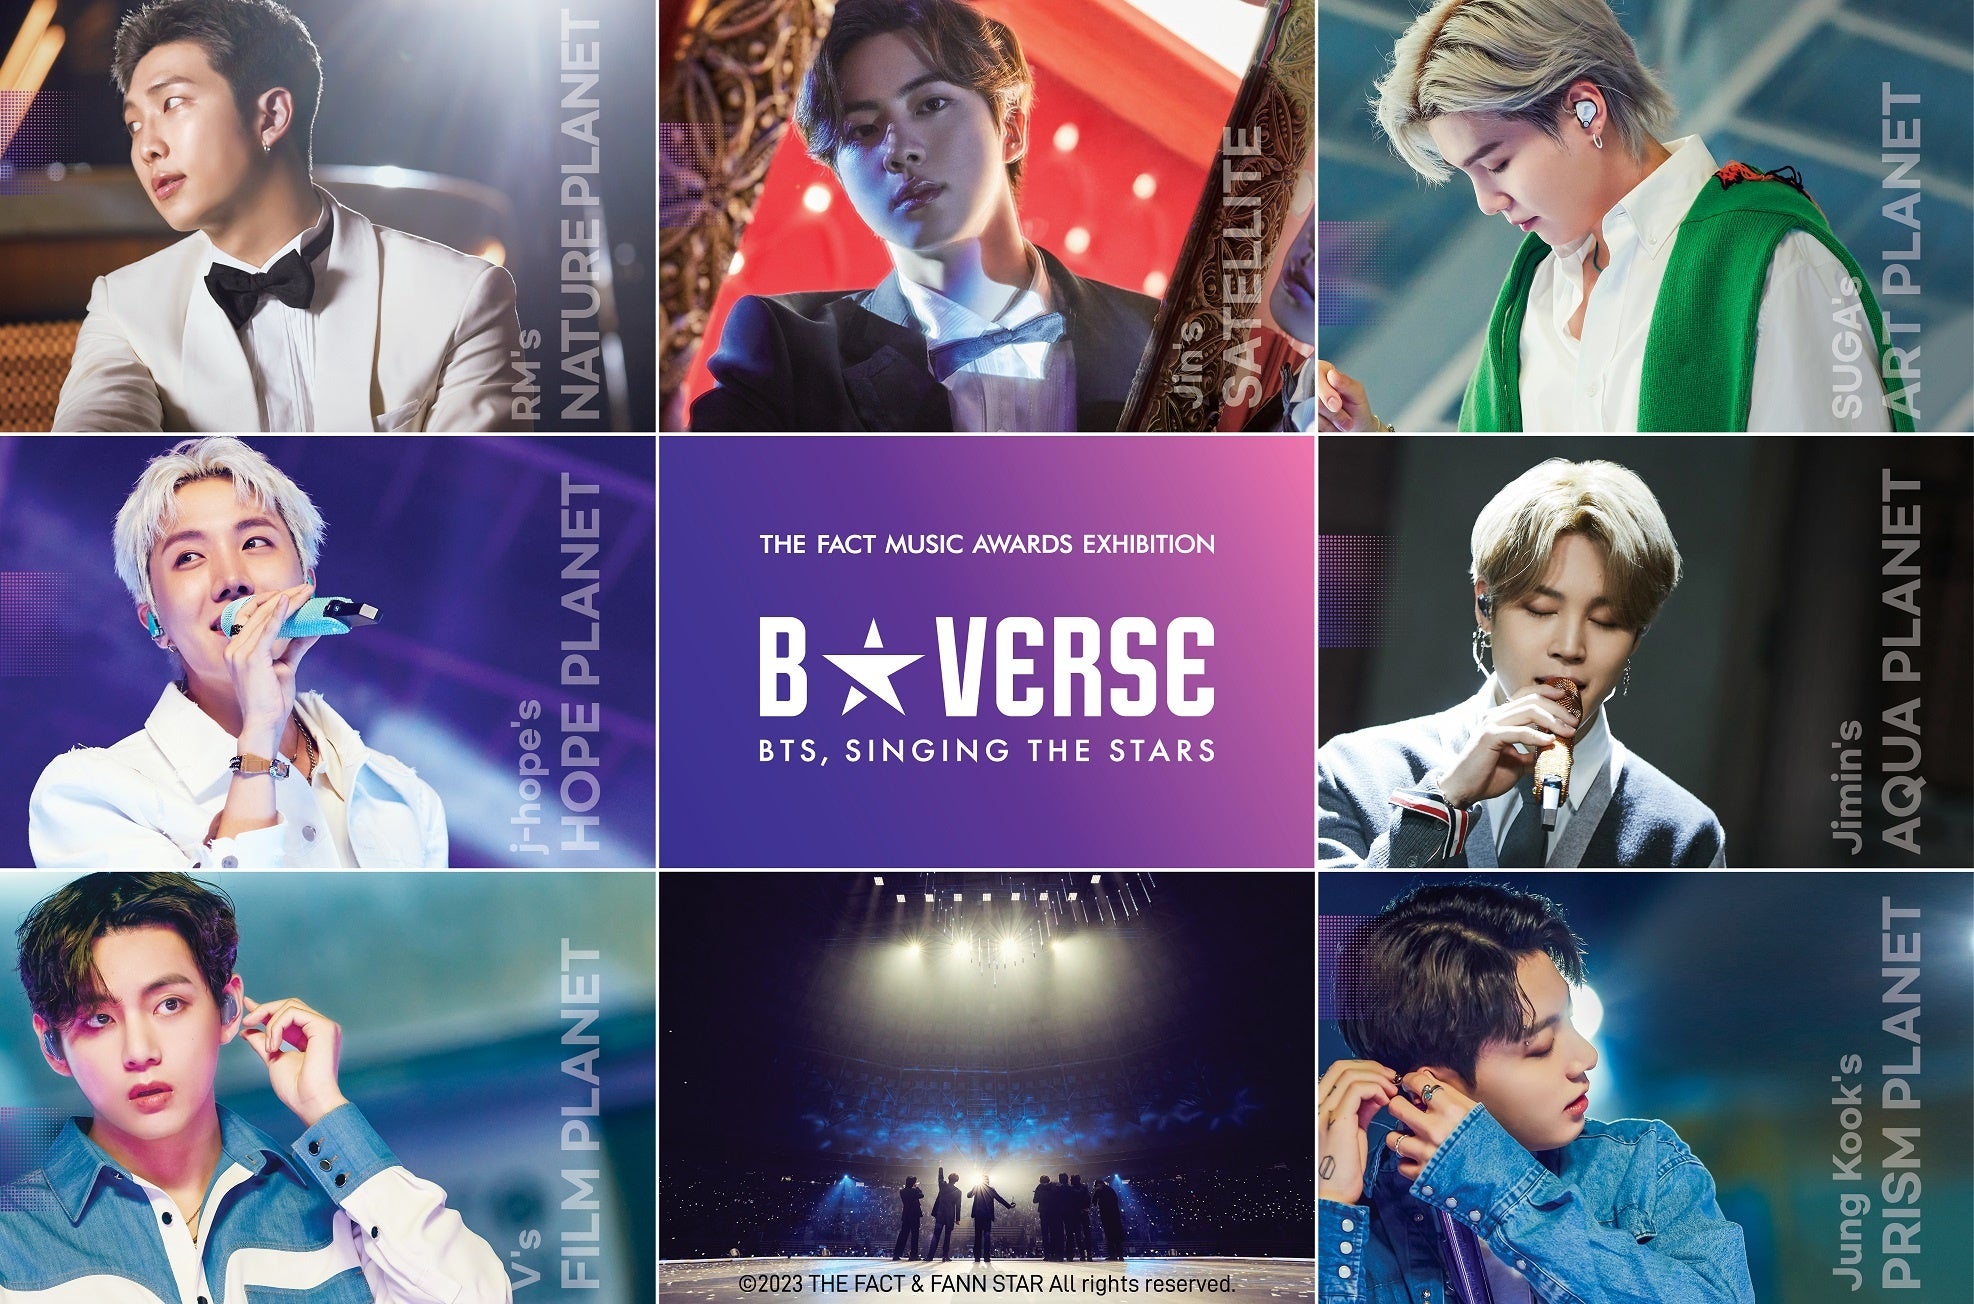 世界中のK-POPファンのための特別な展示会「B☆VERSE」(BTS、星を歌う ...